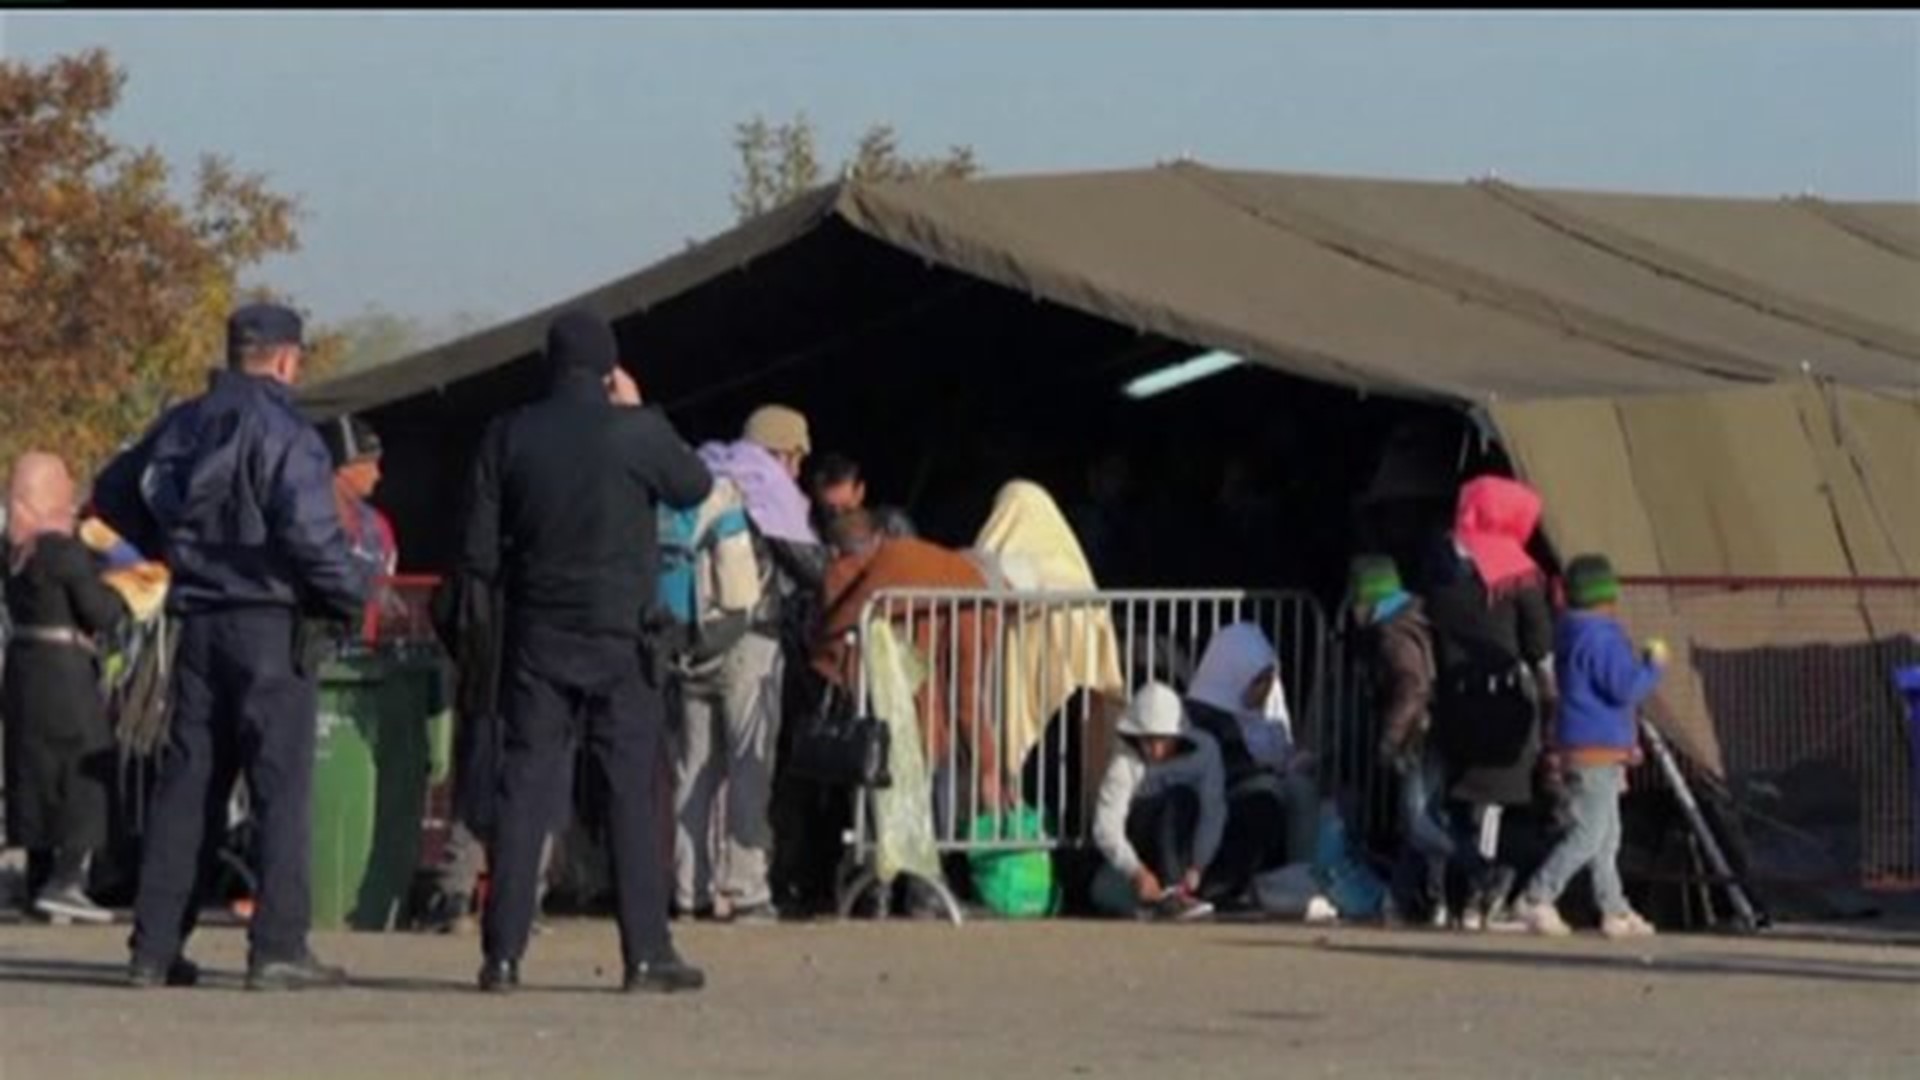 States halt refugee resettlement